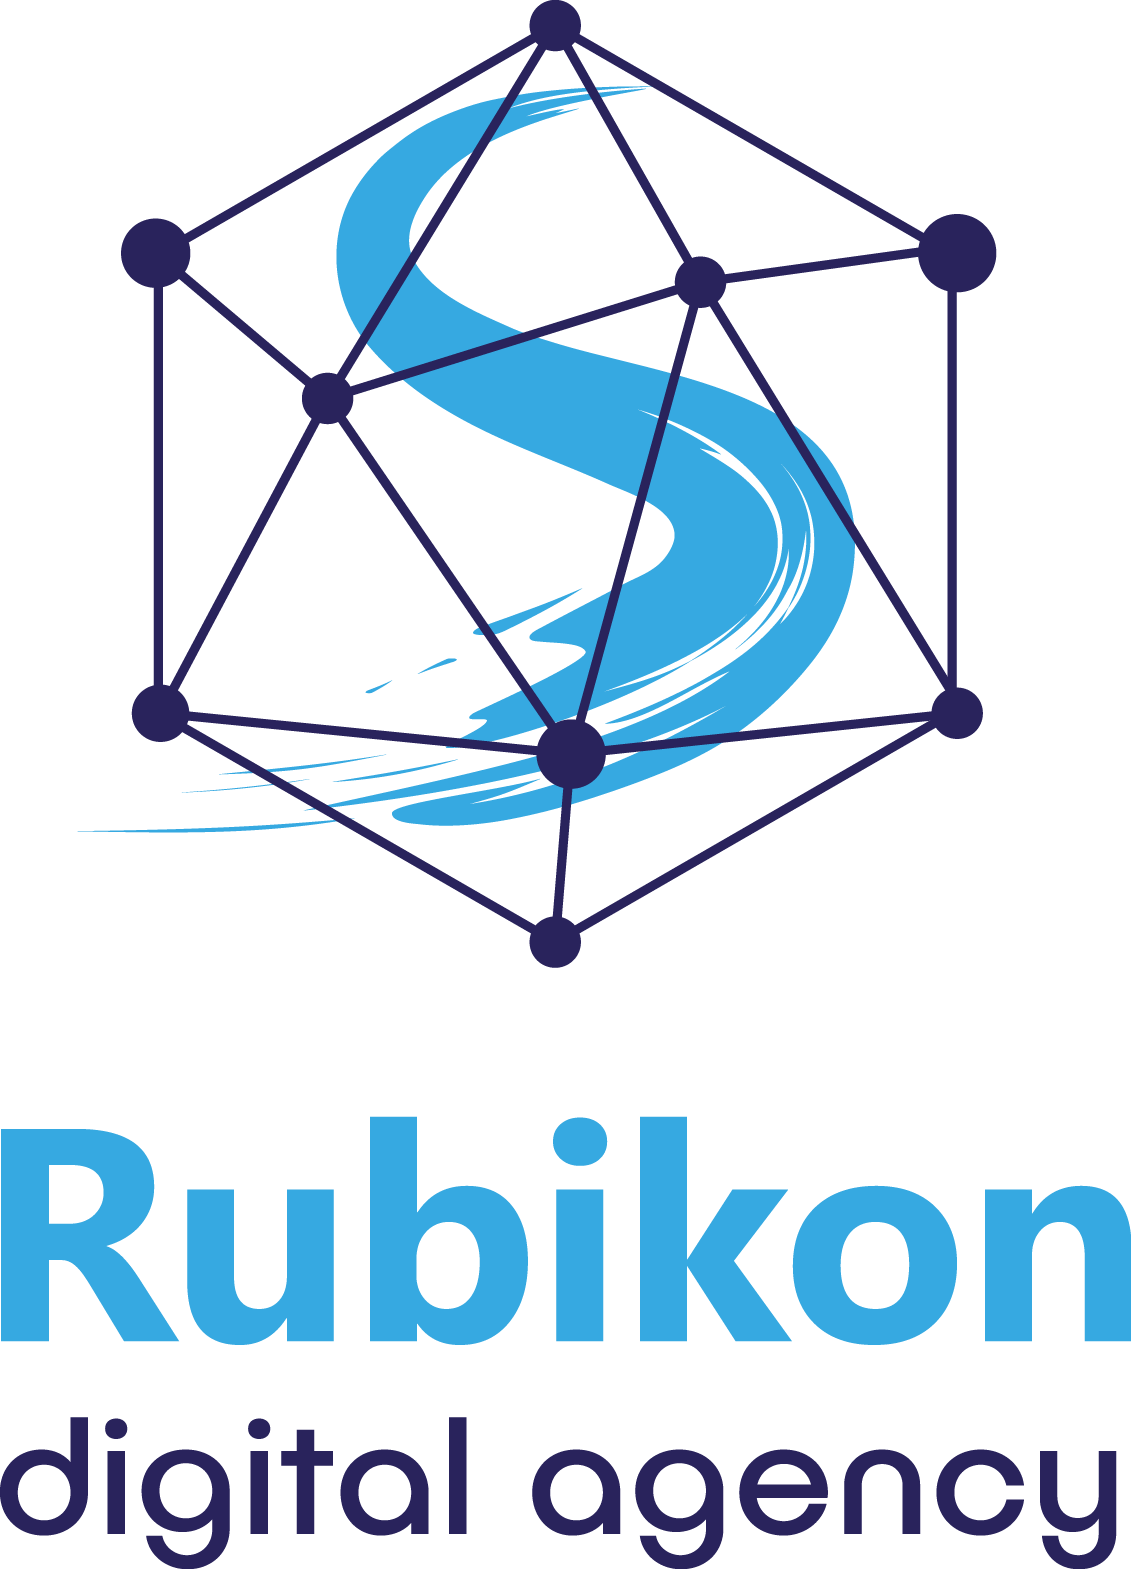 Digital Agency Rubikon